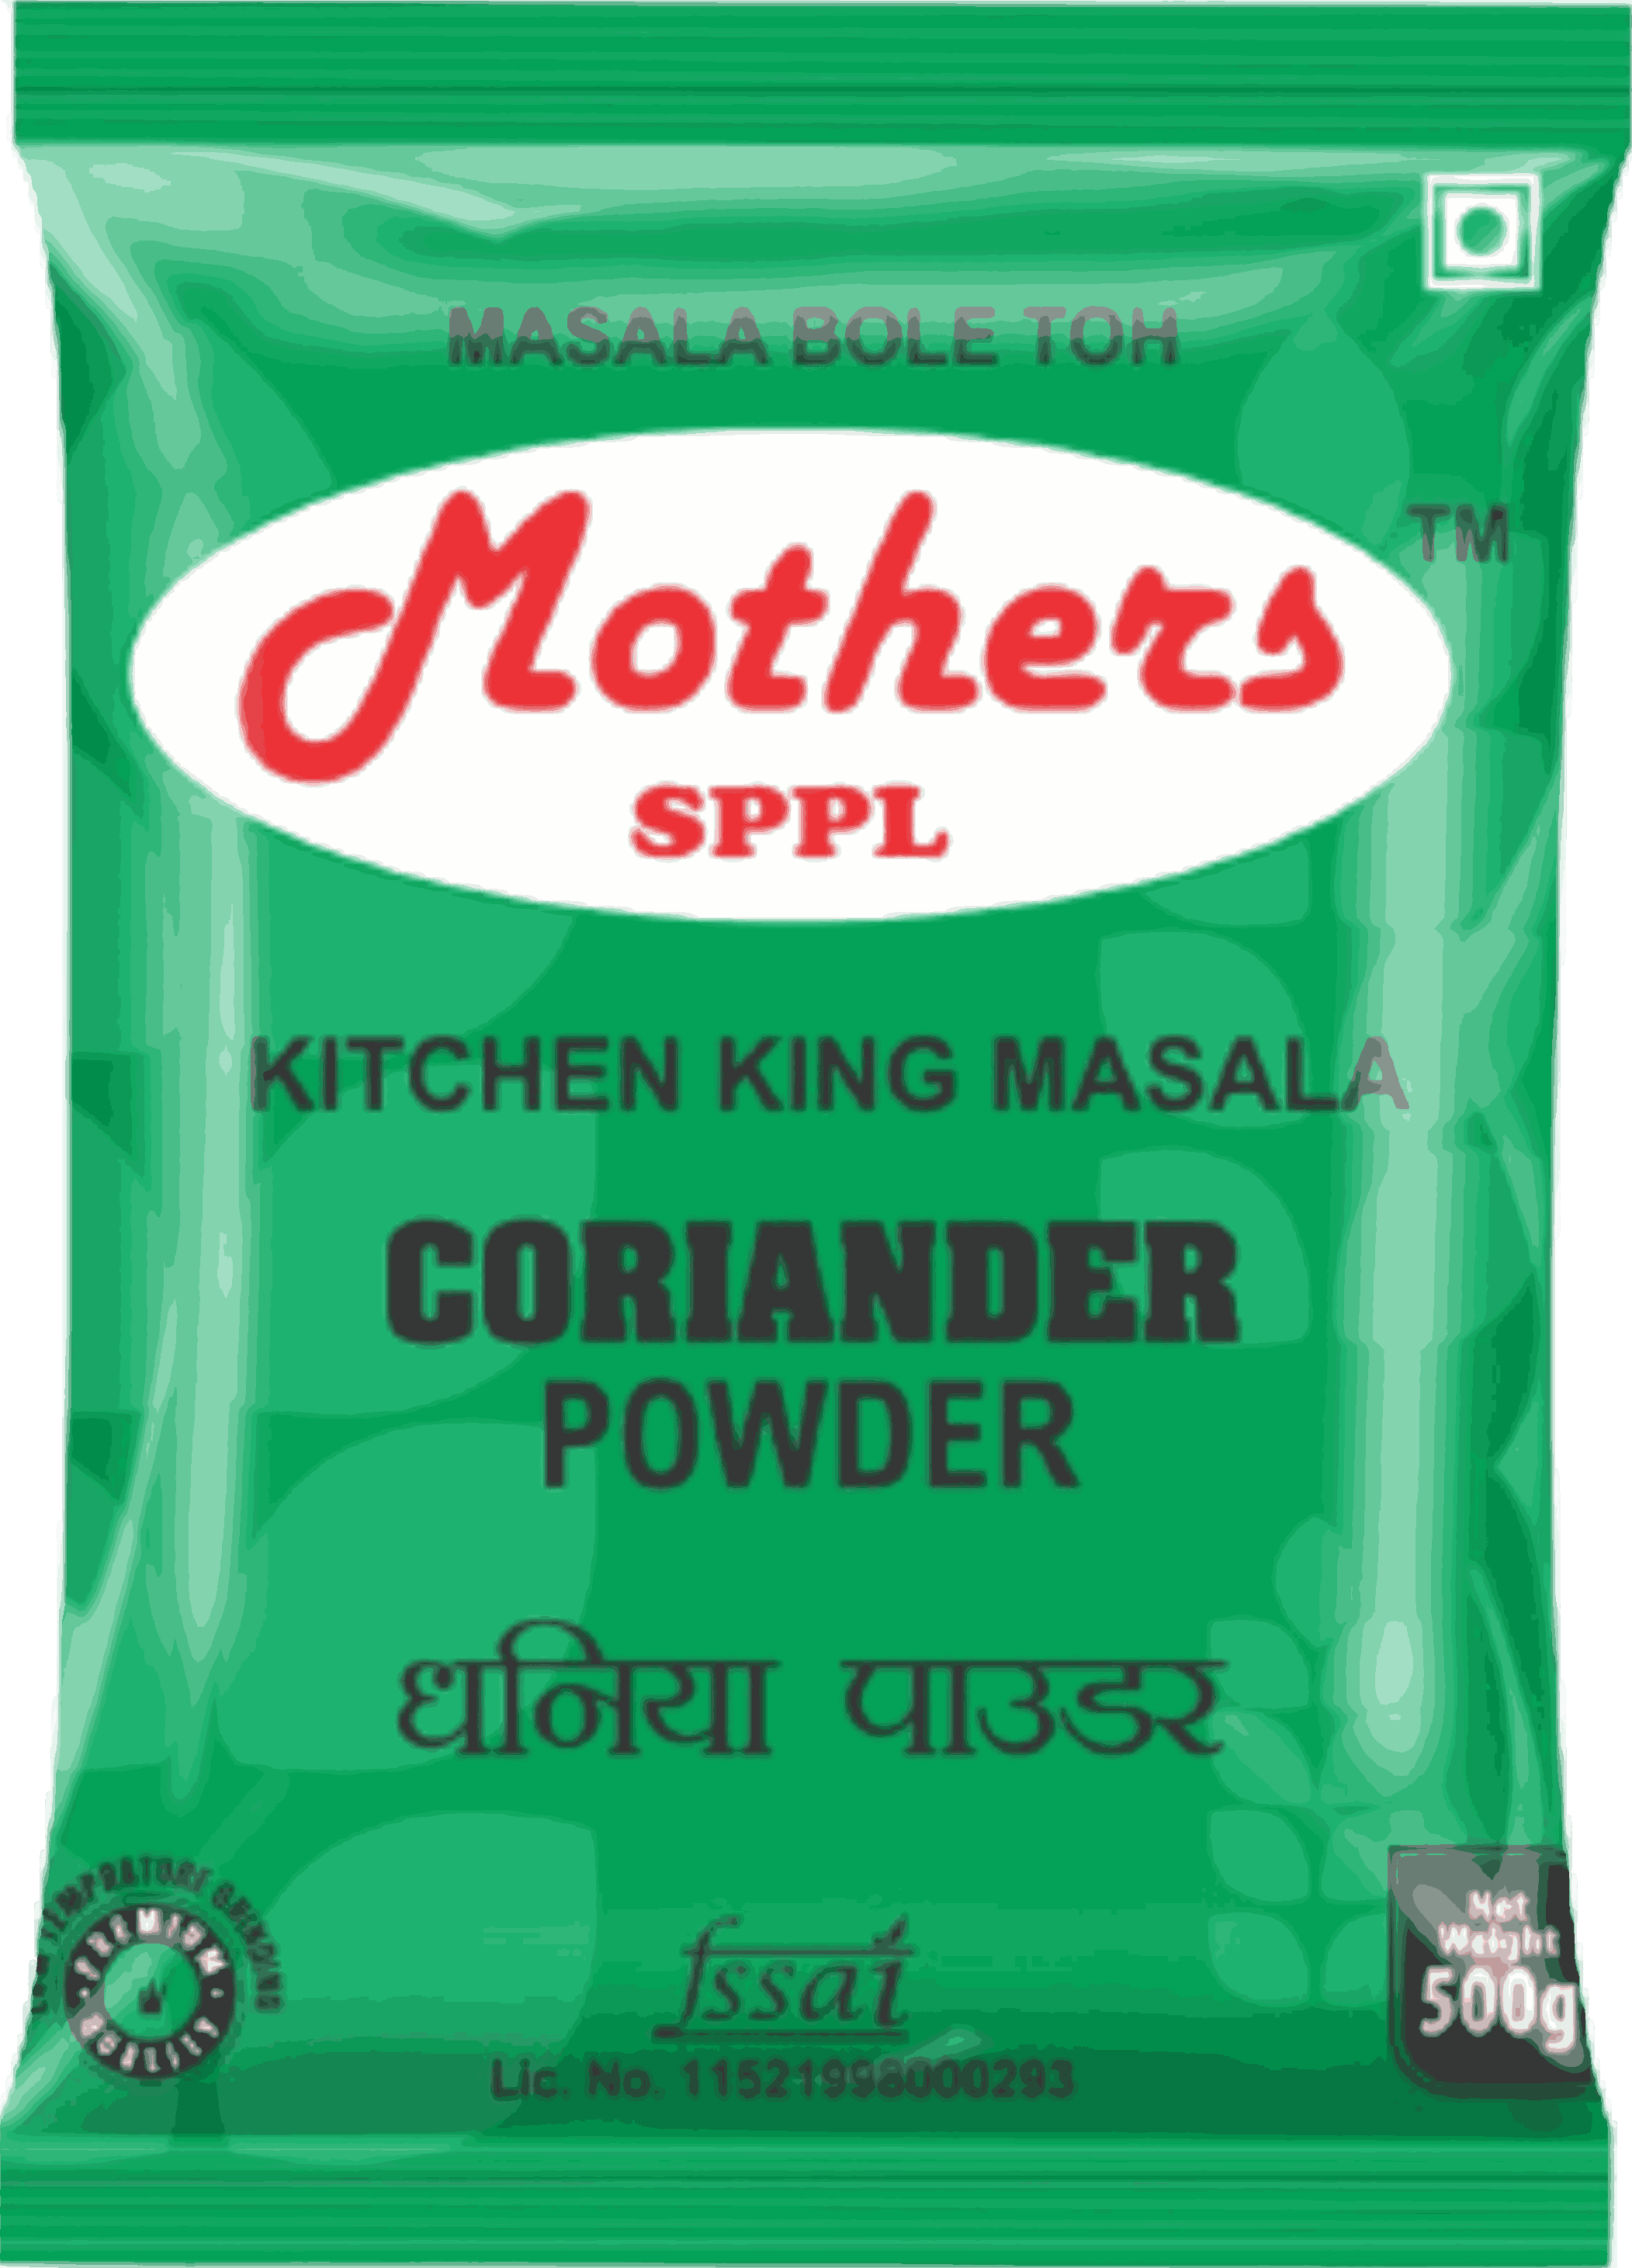 Mothers SPPL's Regular Coriander Powder